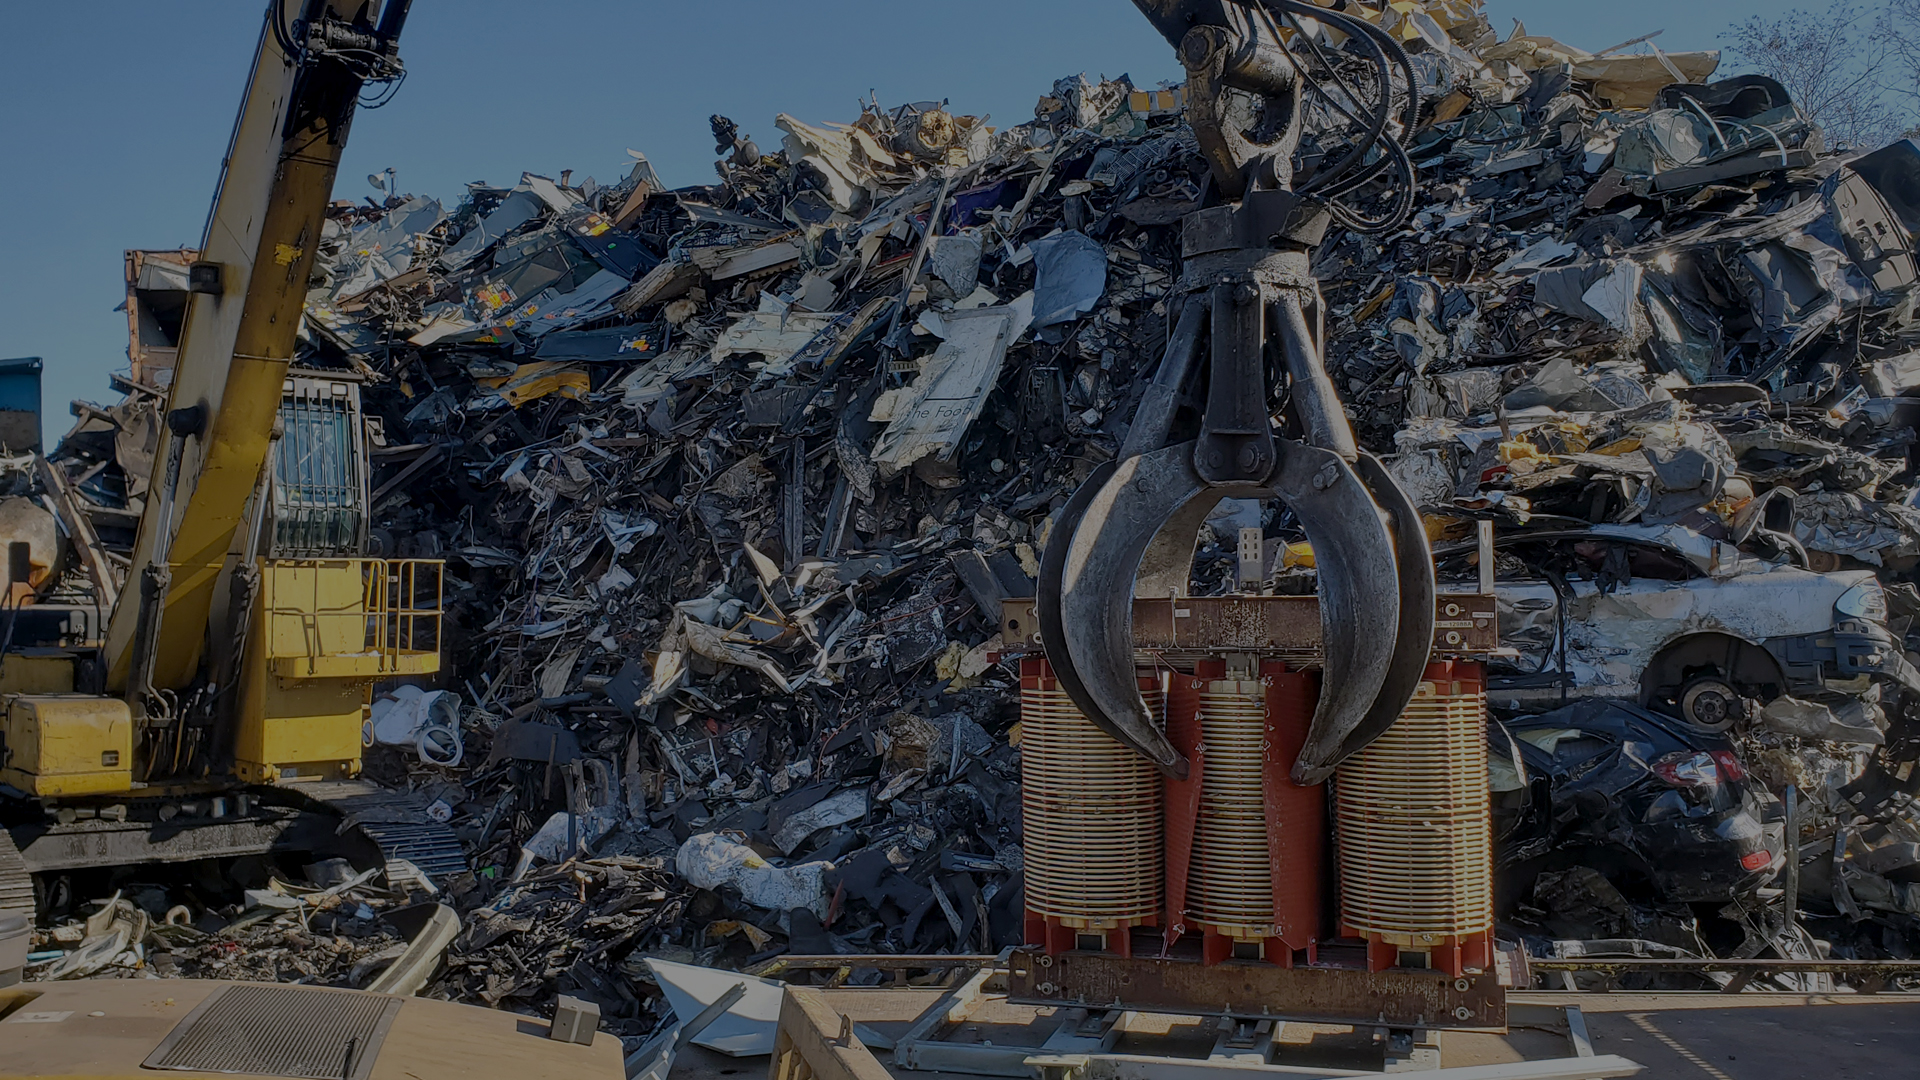 Plakos Scrap Processing Inc. | Scrap Metal Recycling Professional Service | Brooklyn, NY | Phone: 718.385.0707 Fax: 718.385.0721 | plakosscrap2@gmail.com